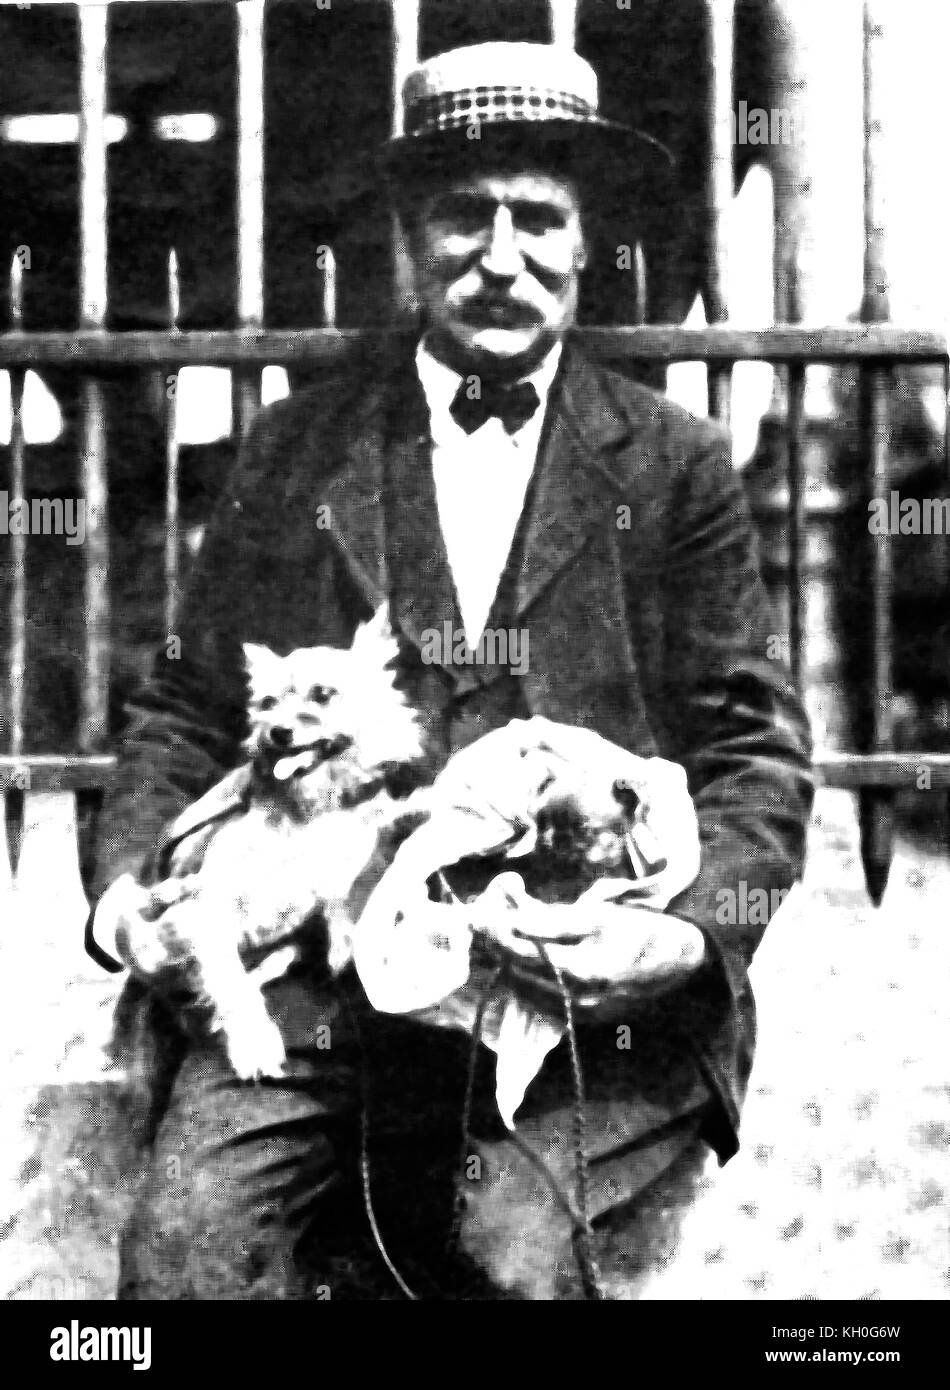 Straw Hat - ein Mann, der in Frankreich mit seiner Runde Hunde trägt den typischen Straw hat in den frühen 1900ern populär Stockfoto